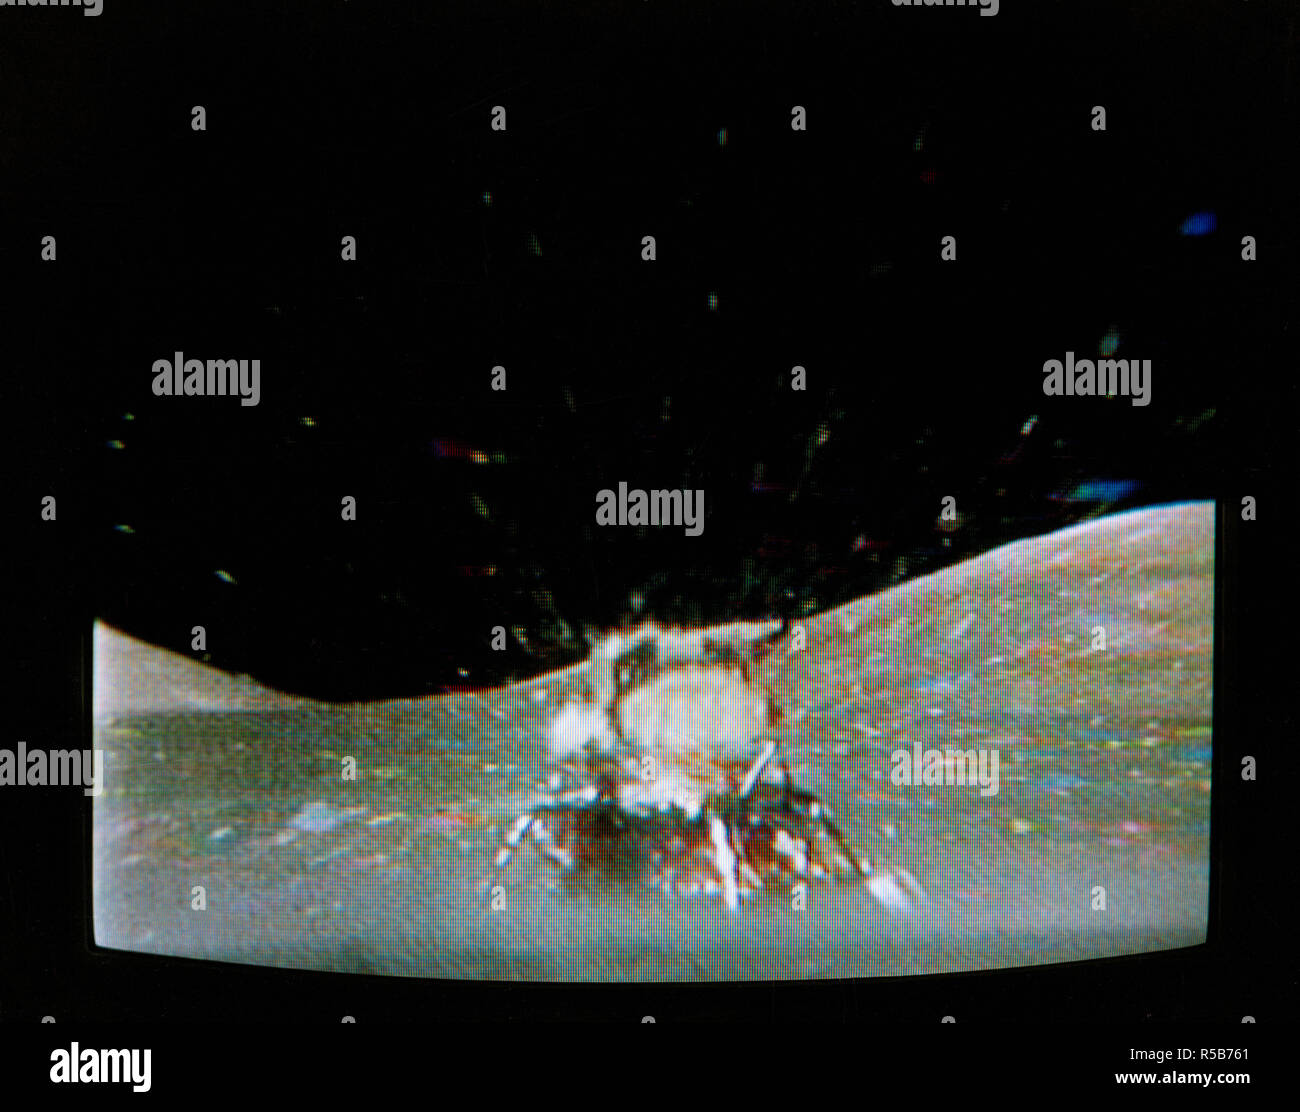 Die Apollo 17 Lunar Module (LM) 'Challenger' Stufenaufstieg verlässt den Taurus-Littrow Landeplatz da Sie sich spektakuläre liftoff von der Mondoberfläche, wie in dieser Reproduktion aus einem Farb-TV Übertragung durch die Farbe RCA TV-Kamera über das Lunar Roving Vehicle (LRV) montiert gesehen. Die LRV-TV-Kamera, Remote aus dem Mission Control Center (MCC) in Houston gesteuert, machte es möglich, für die Menschen auf der Erde die fantastische Veranstaltung zu beobachten. Das LM liftoff wurde mit 188:01:36 Boden verstrichene Zeit, 4:54:36 Uhr (CST), Donnerstag, 14. Dezember 1972. Stockfoto